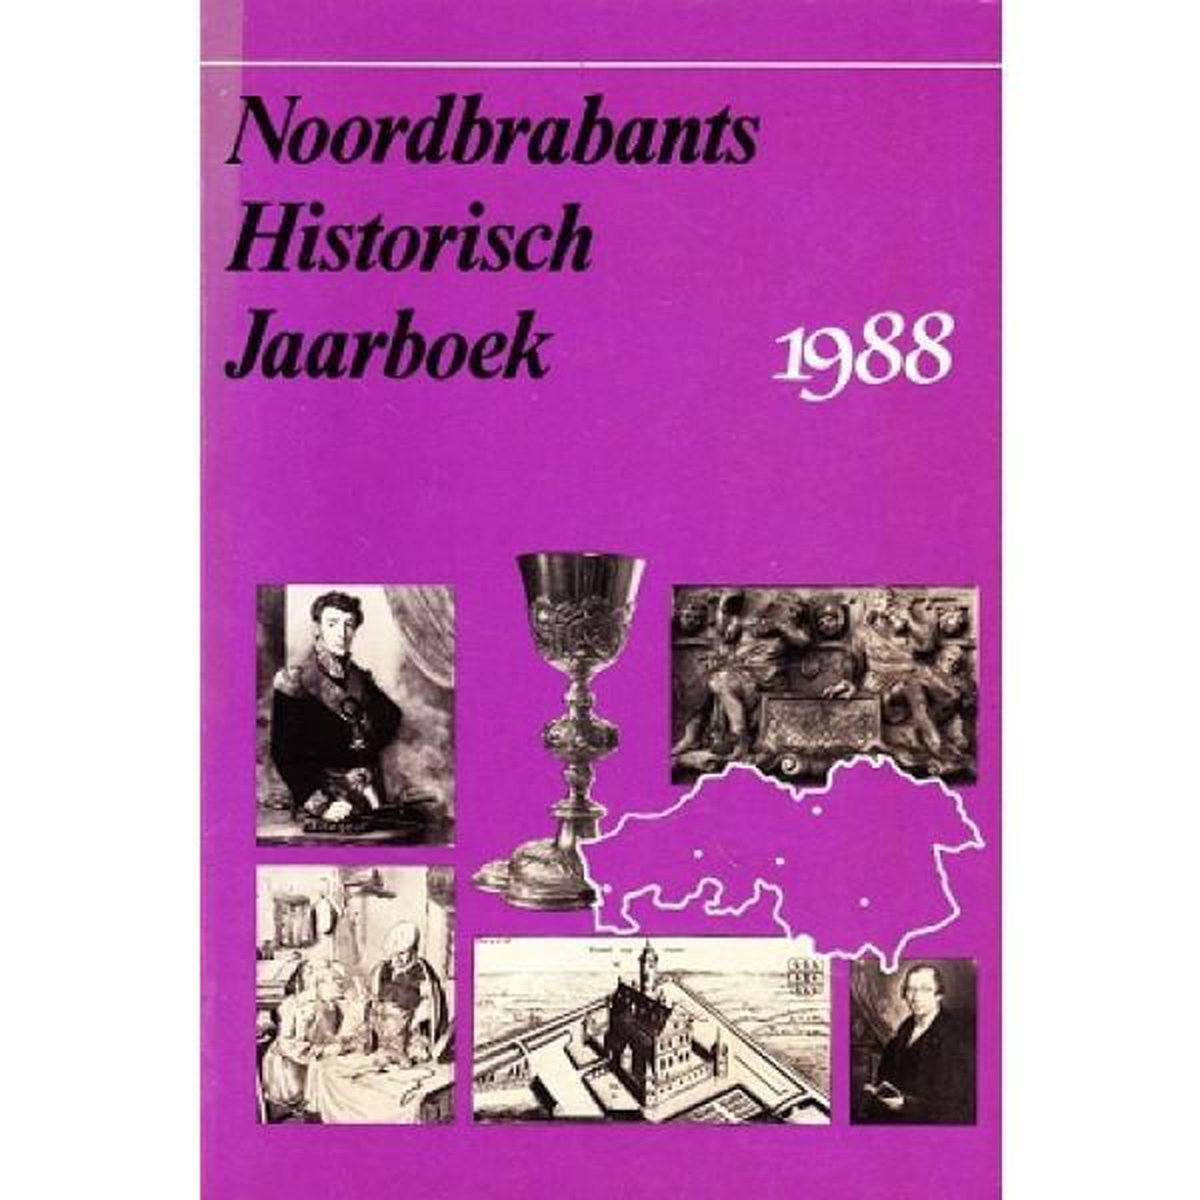 Noordbrabants Historisch Jaarboek 1988 Deel 5